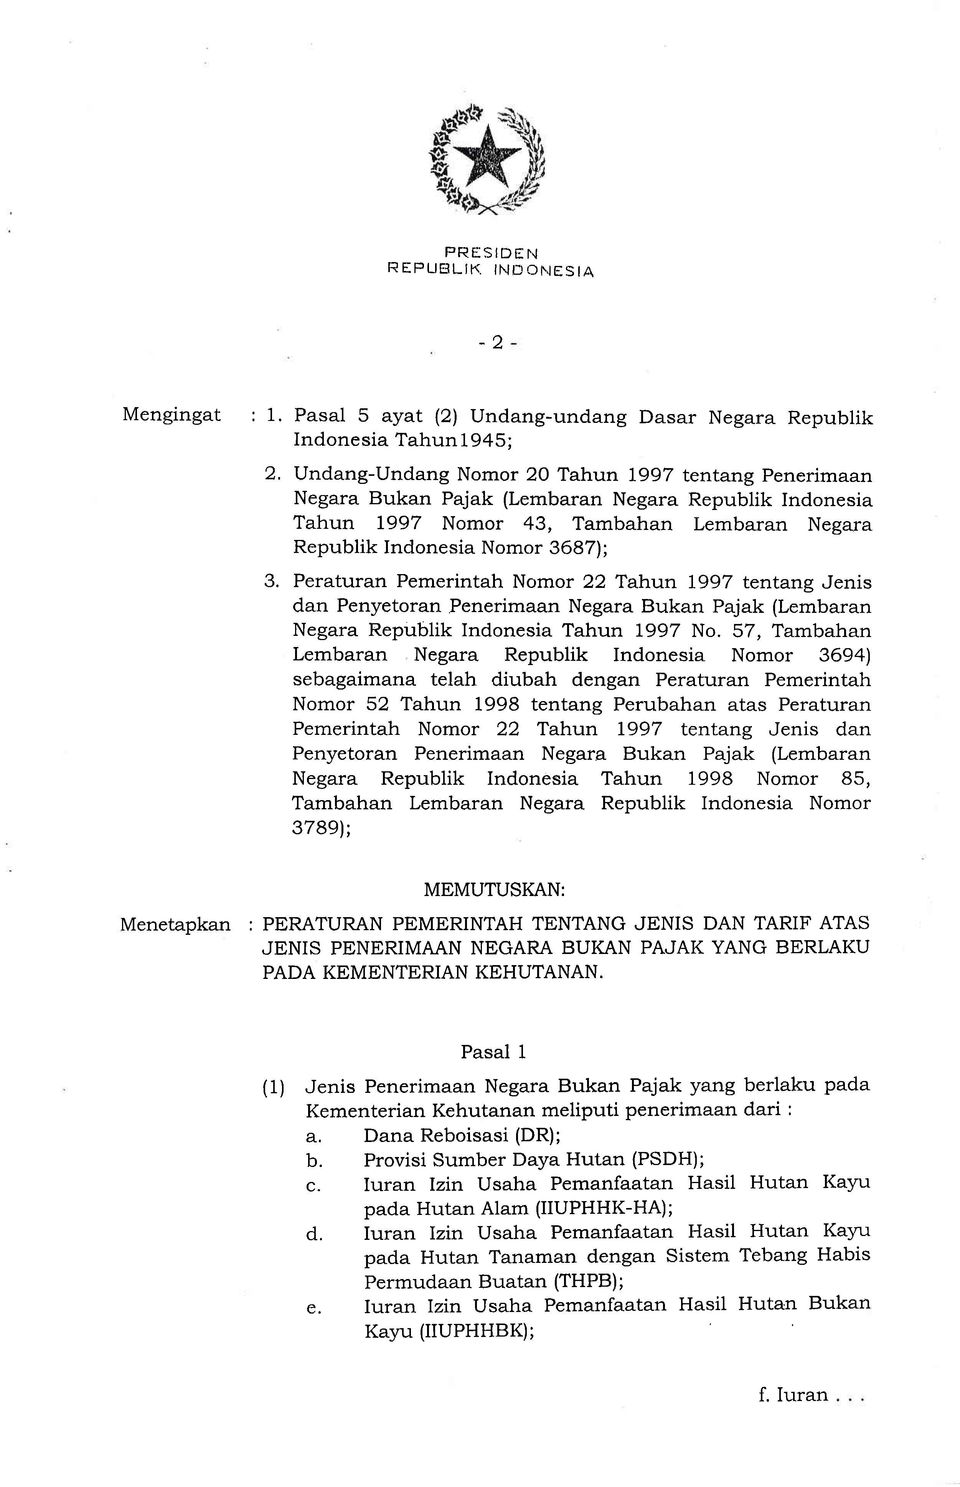 43, Tambahan Lembaran Negara Republik Indonesia Nomor 36871; Peraturan Pemerintah Nomor 22 Tahun 1997 tentang Jenis dan Penyetoran Penerimaan Negara Bukan Pajak (Lembaran Negara Republik Indonesia